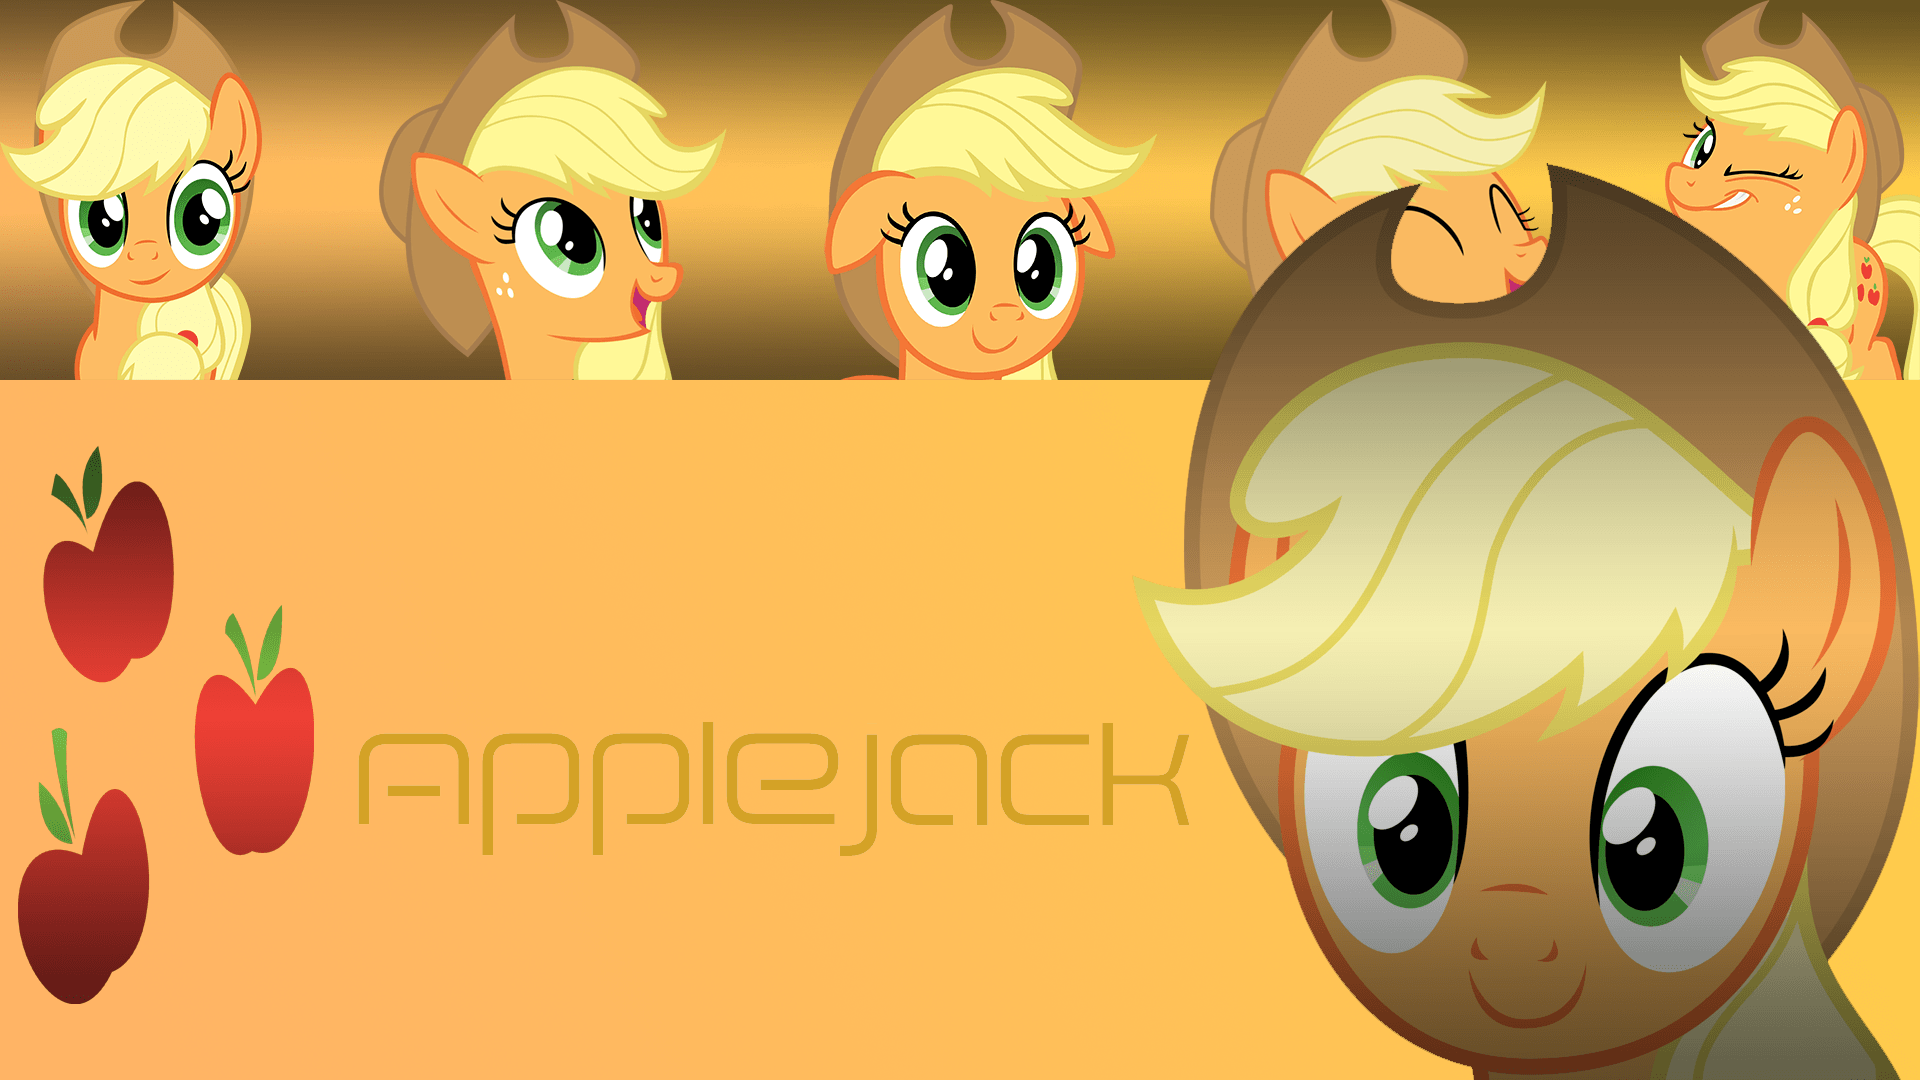 Project Applejack Wallpaper